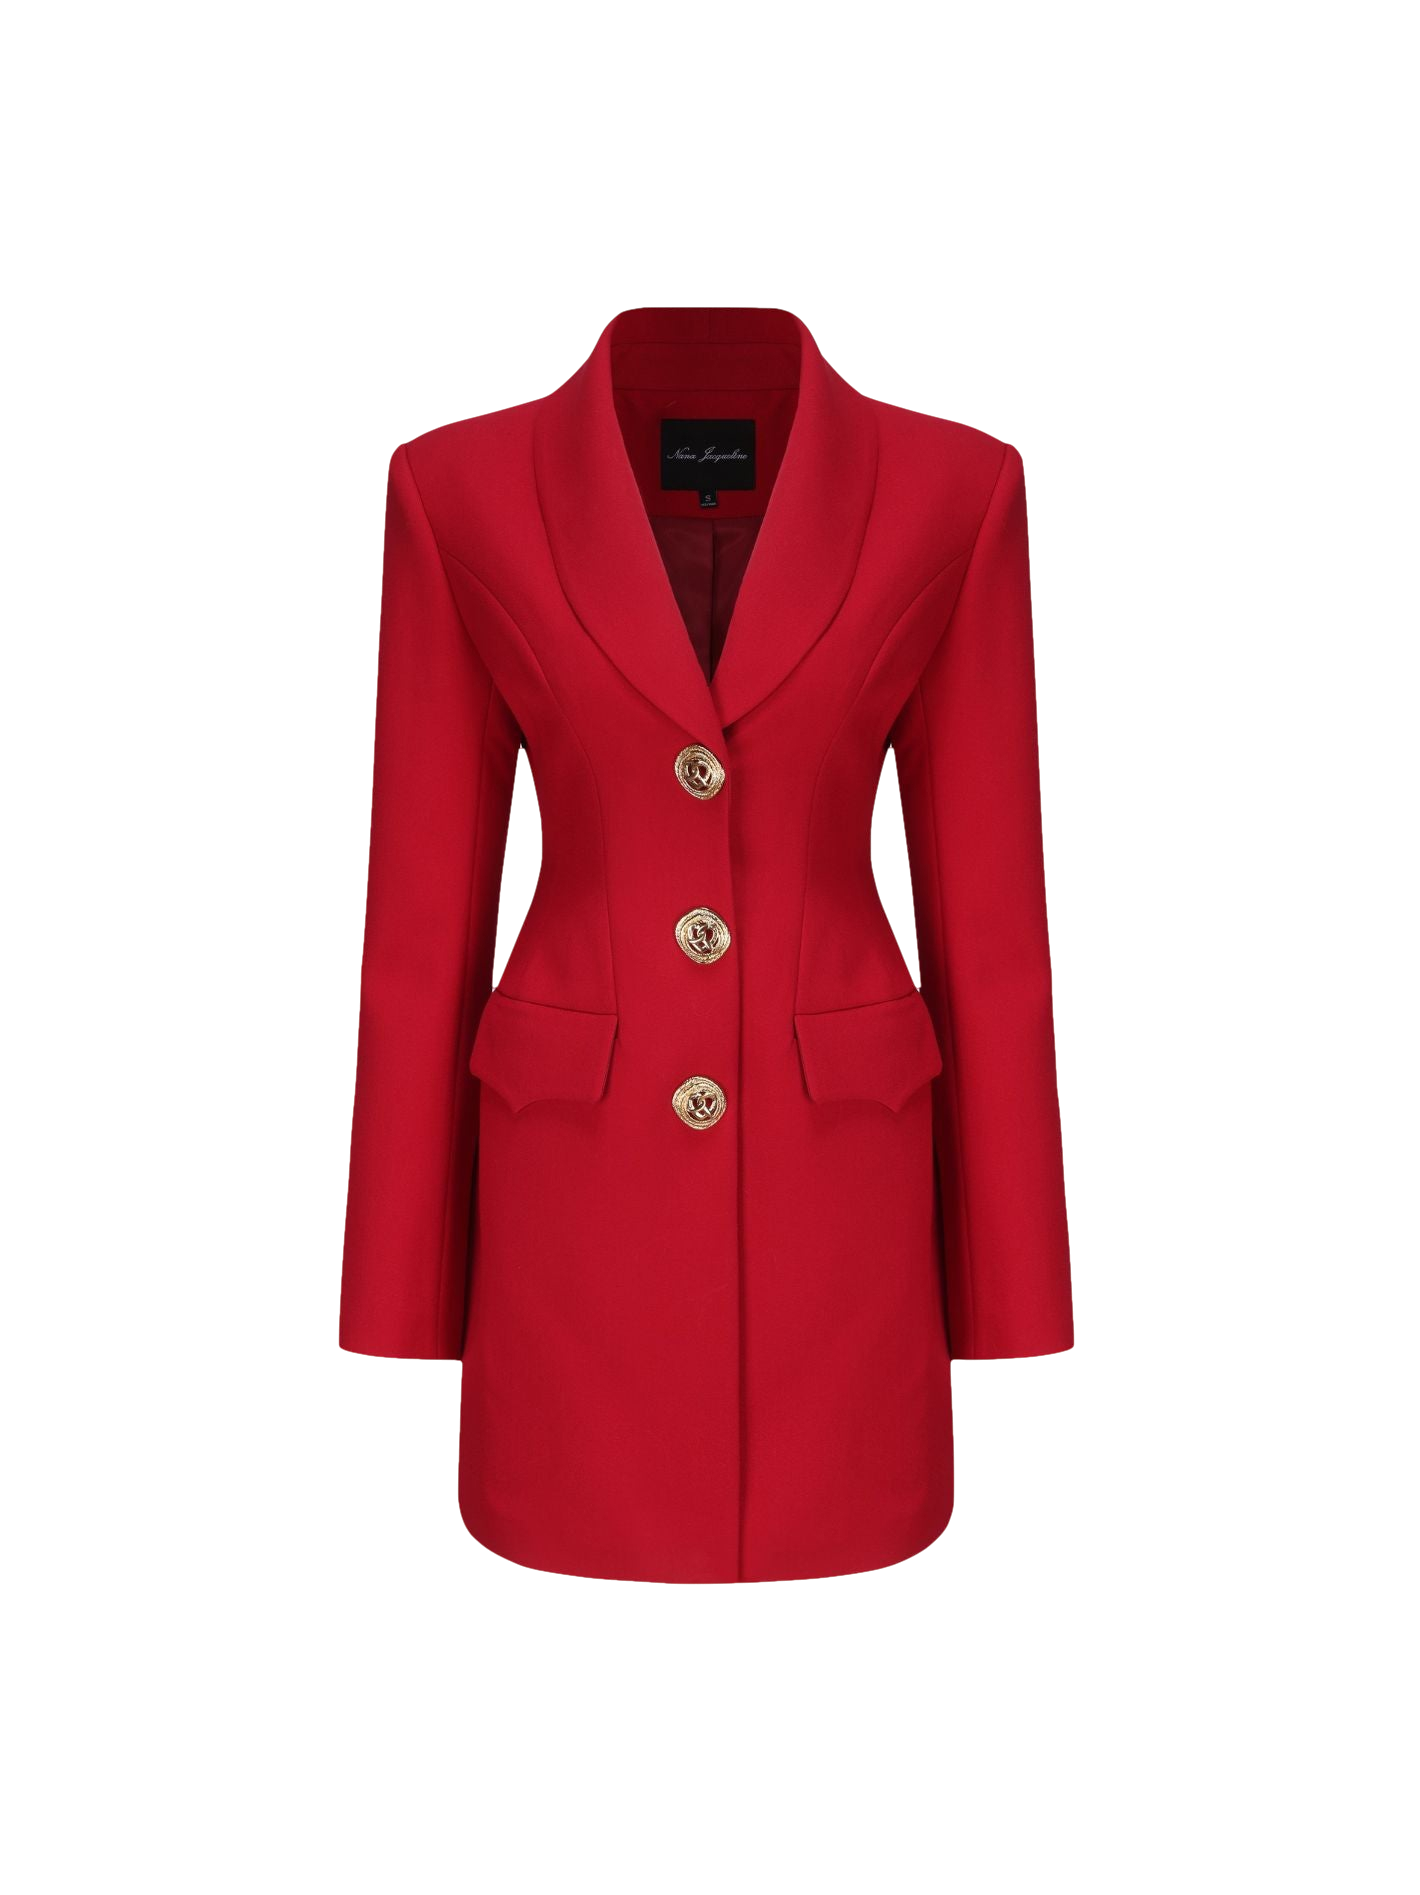 Nana Jacqueline Sasha Suit Jacket (red)